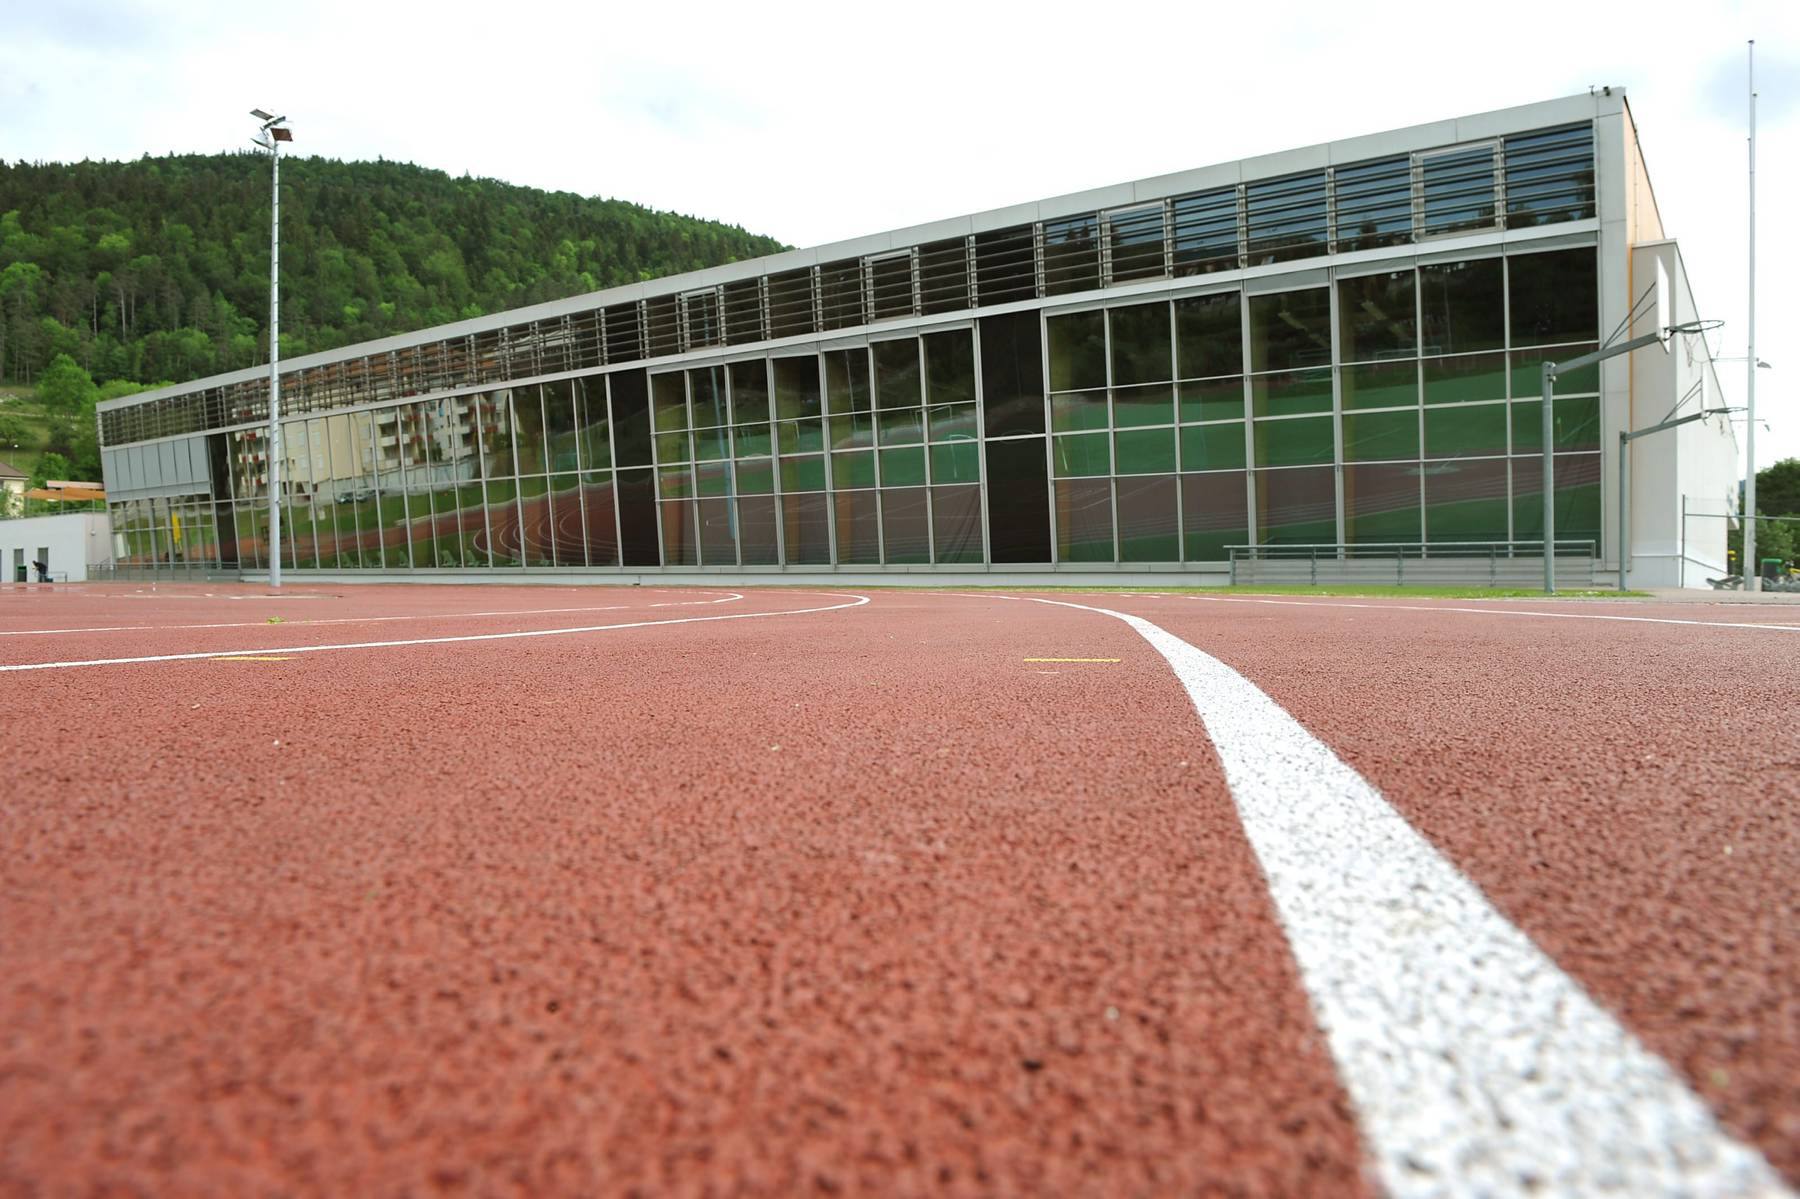 Le Centre sportif du Val-de-Travers accueillera bientôt une centrale solaire photovoltaïque, installée par la coopérative Coopsol.